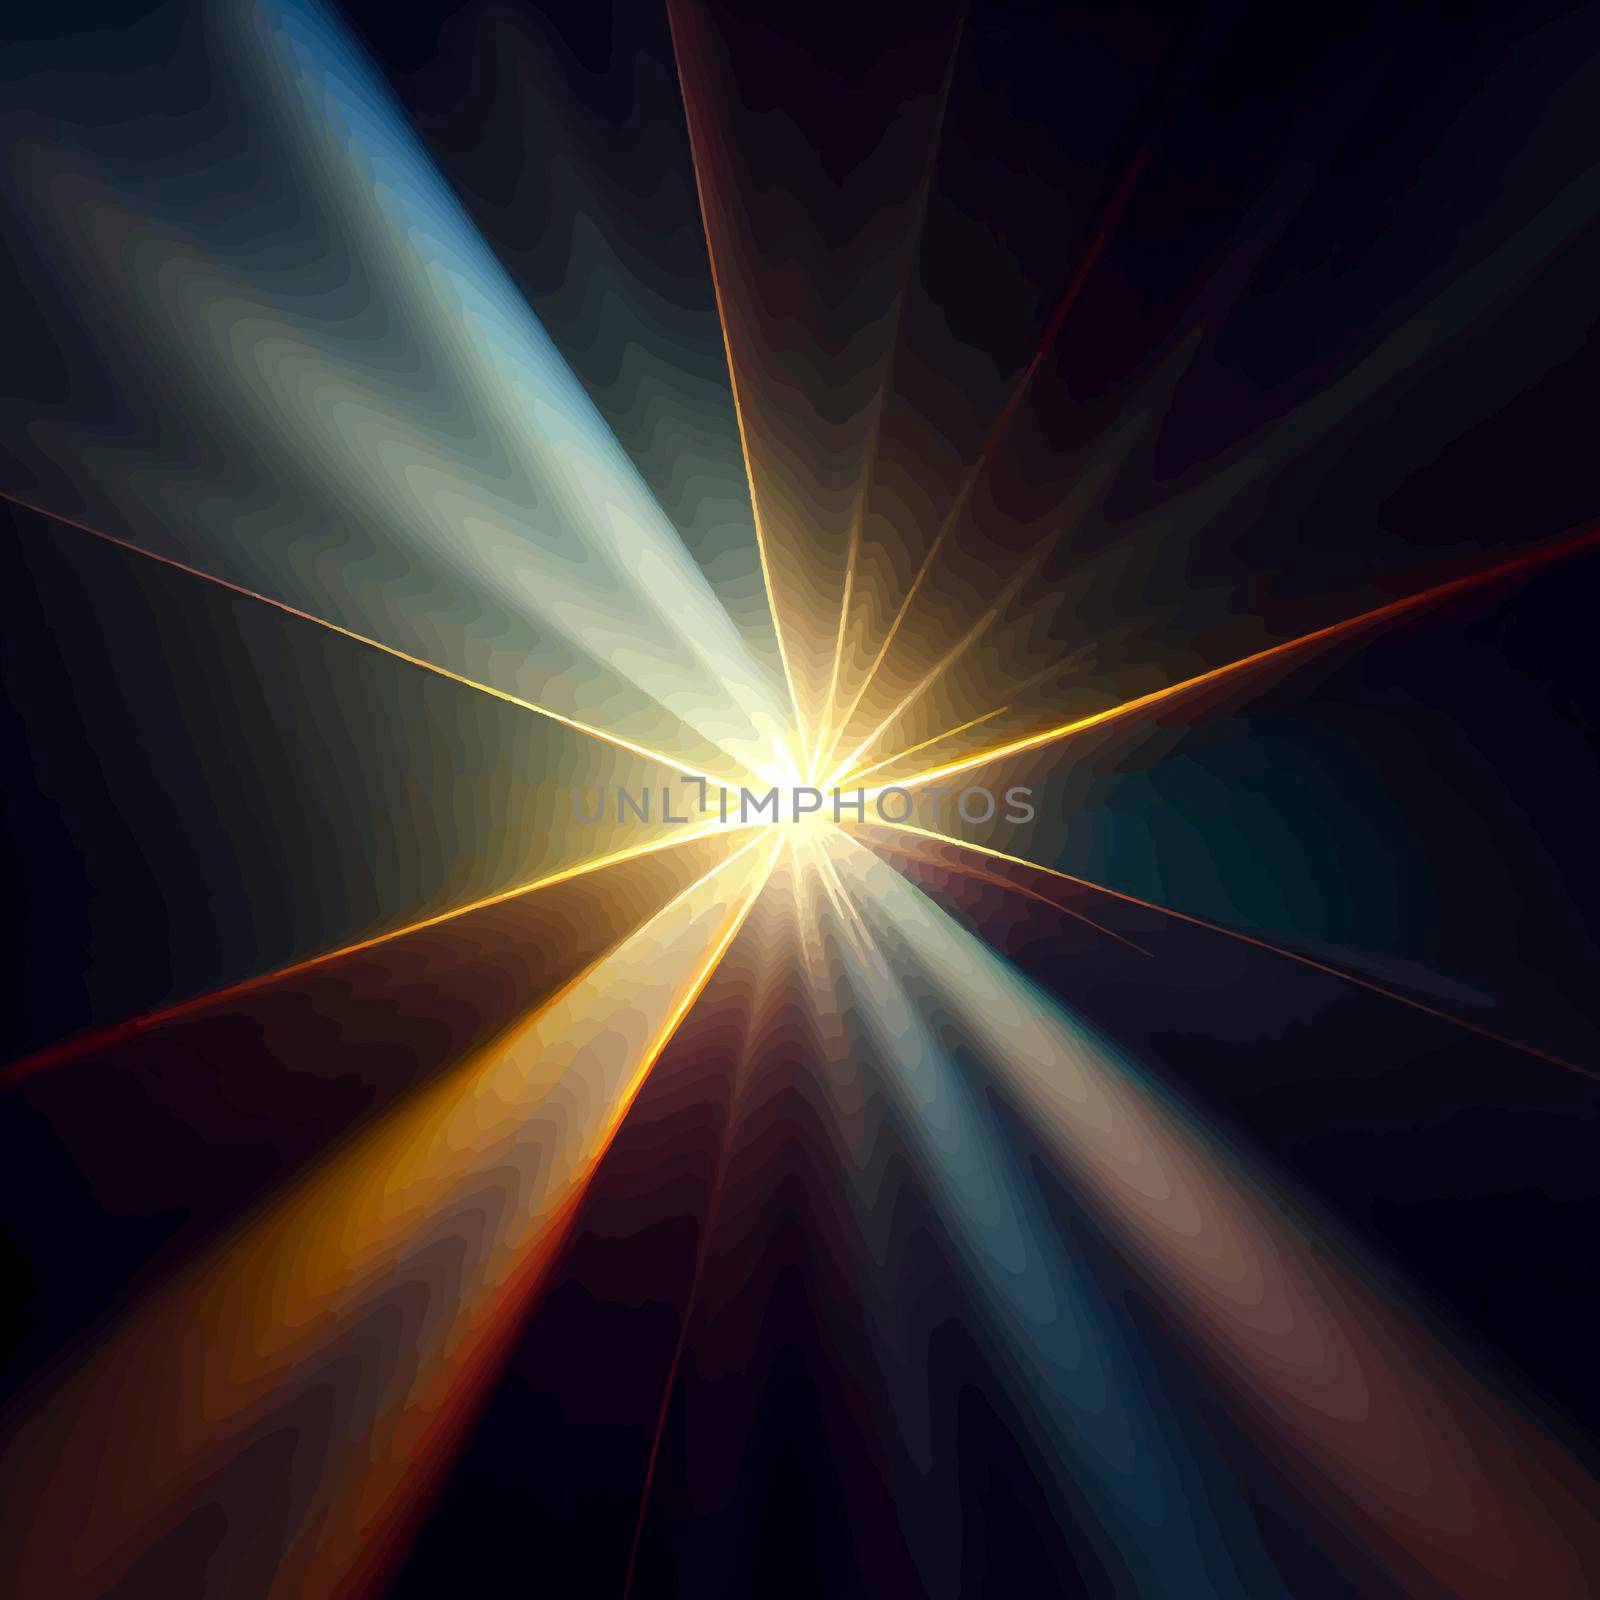 Light Lens flare on black background. Lens flare with bright light isolated with a black background by JpRamos